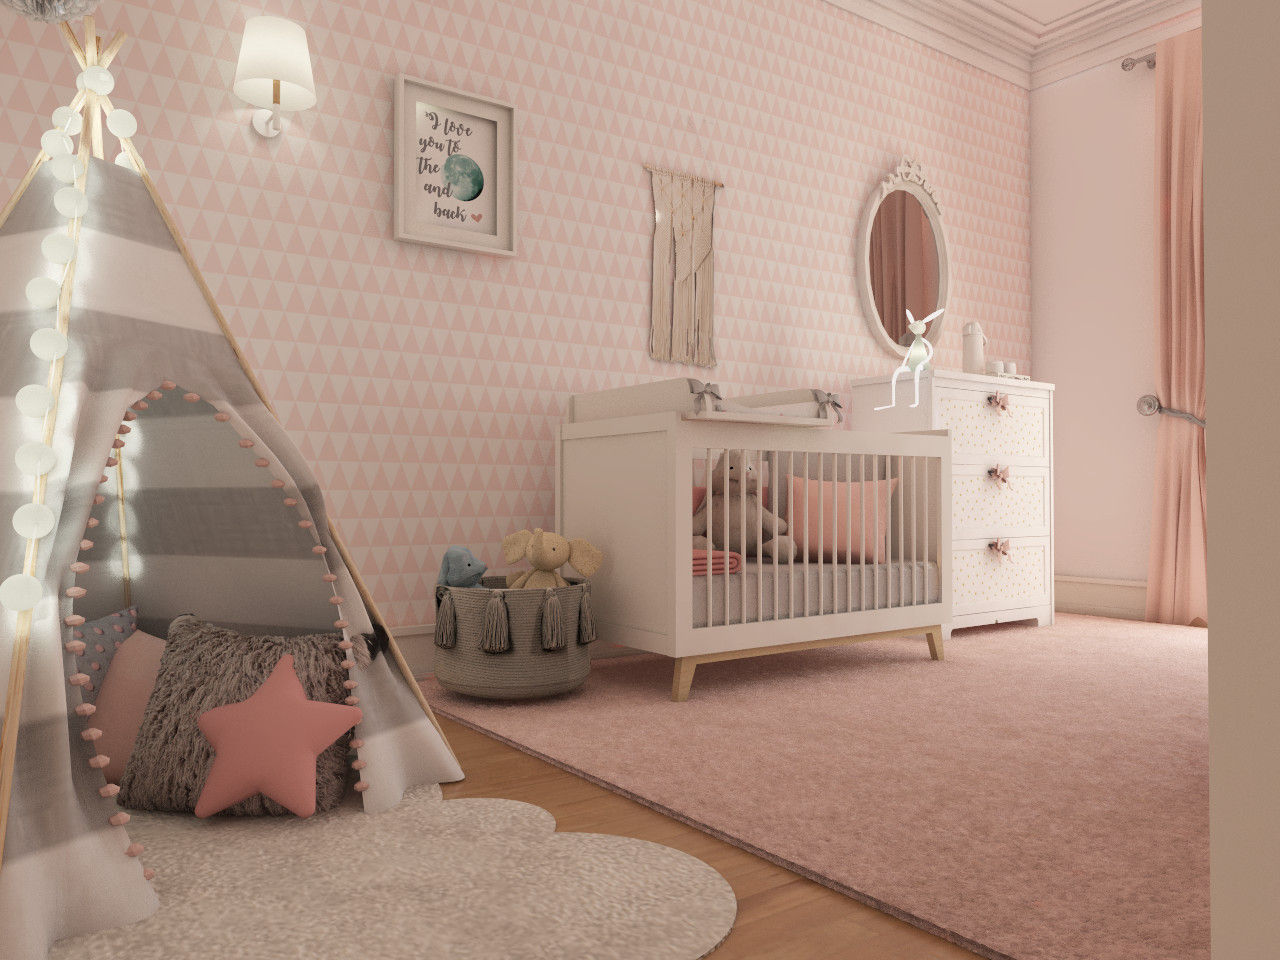 Projeto tranquilo de decoração de quarto de bebé , The Spacealist - Arquitectura e Interiores The Spacealist - Arquitectura e Interiores غرف الرضع